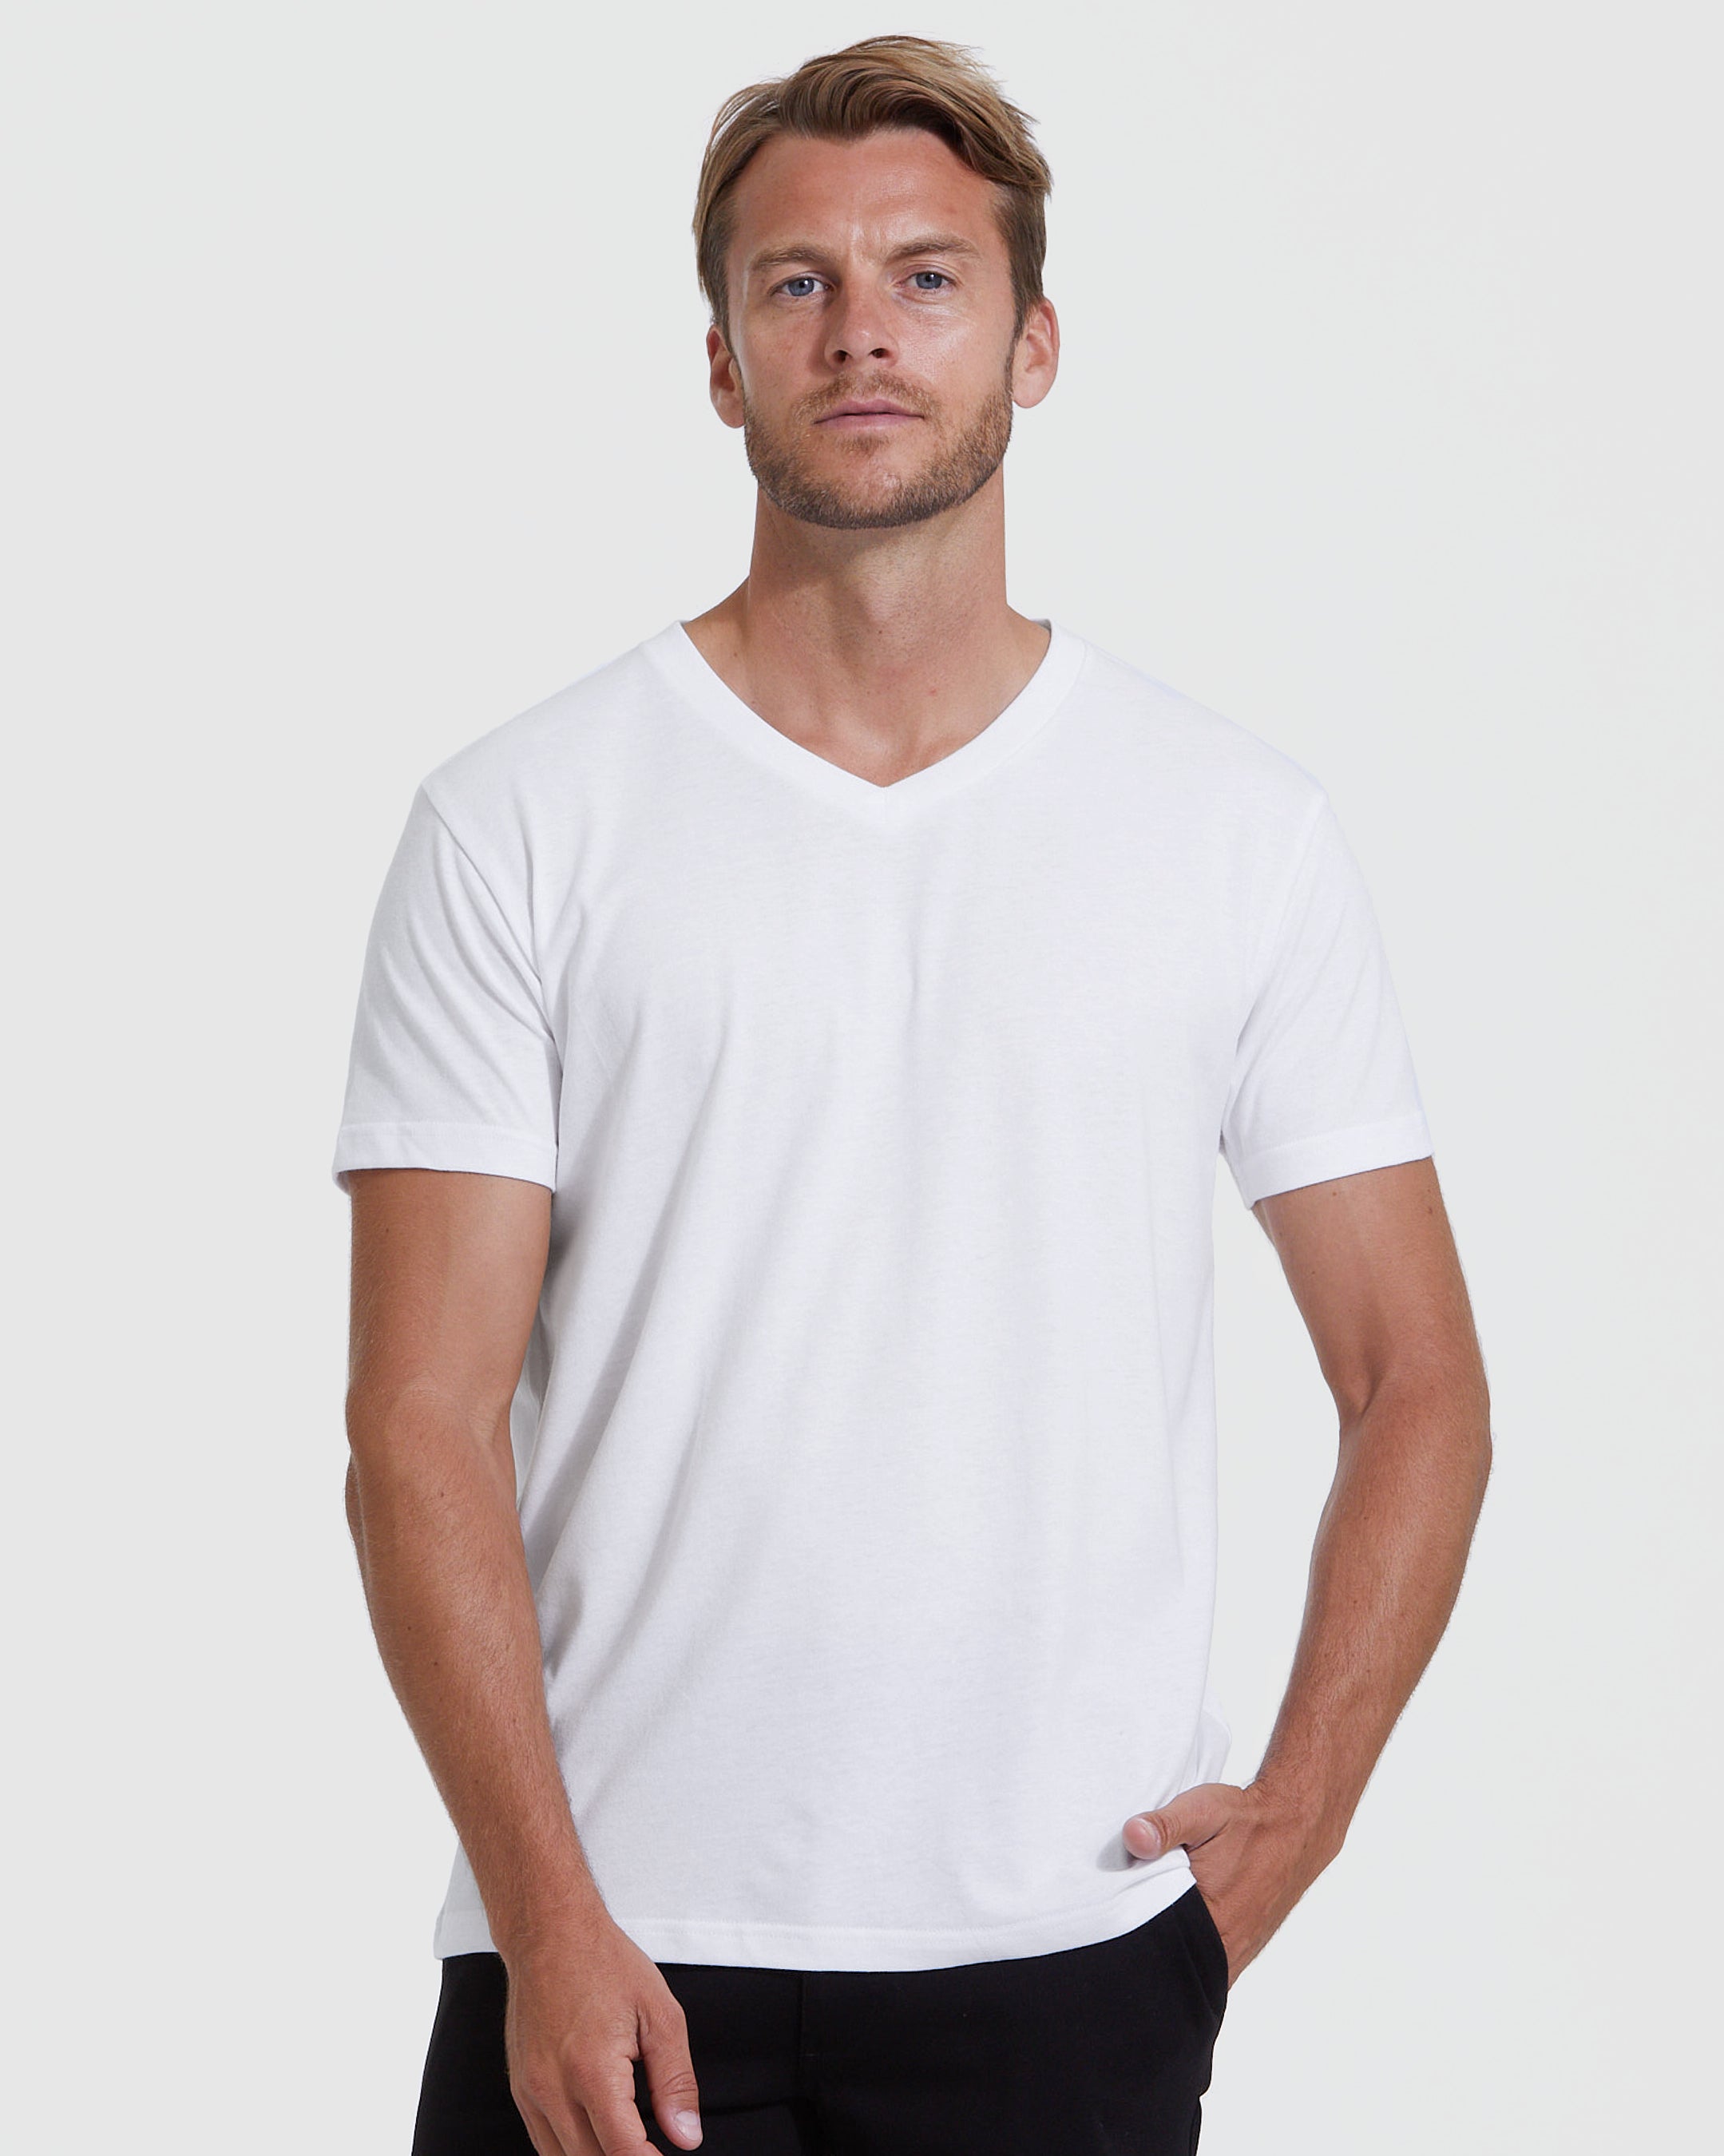 | | Shirt White True T-Shirt Men\'s White V-Neck V-Neck Classic